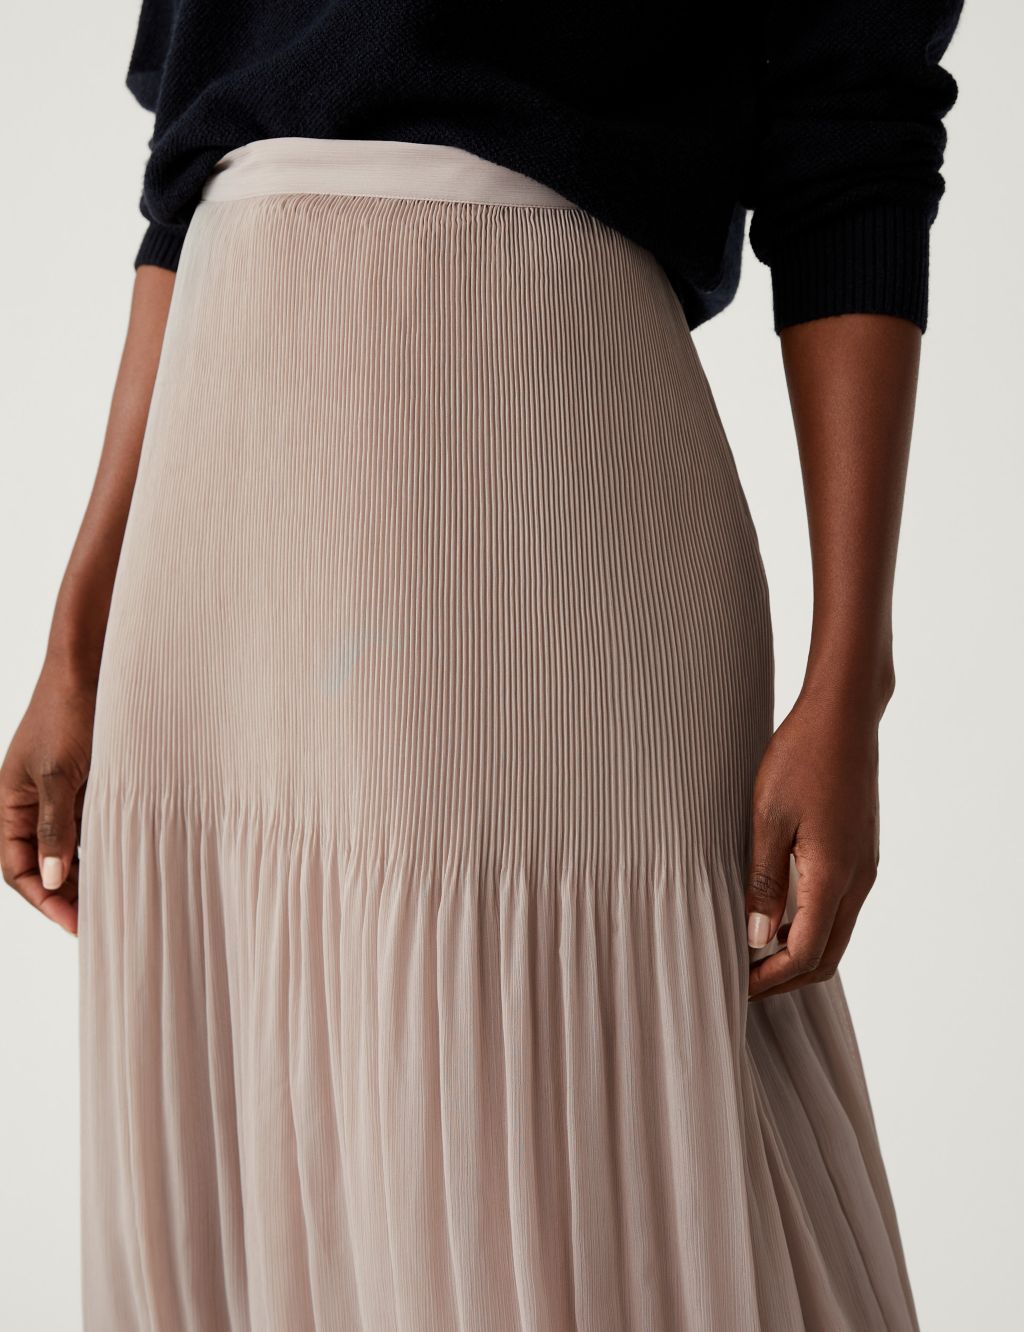 Plisse Midaxi Skirt image 2